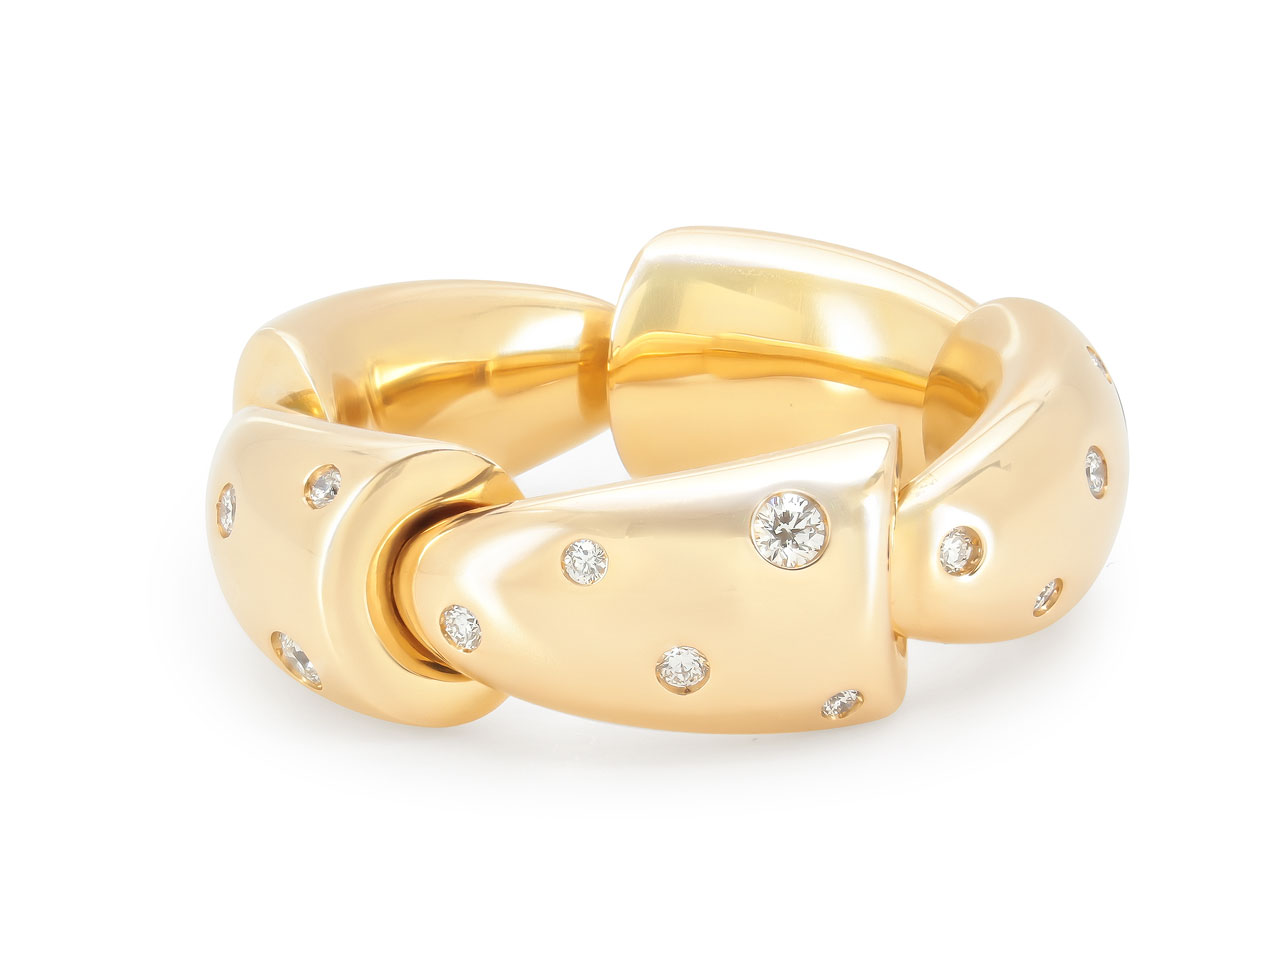 Vhernier 'Calla' Diamond Ring in 18K Rose Gold